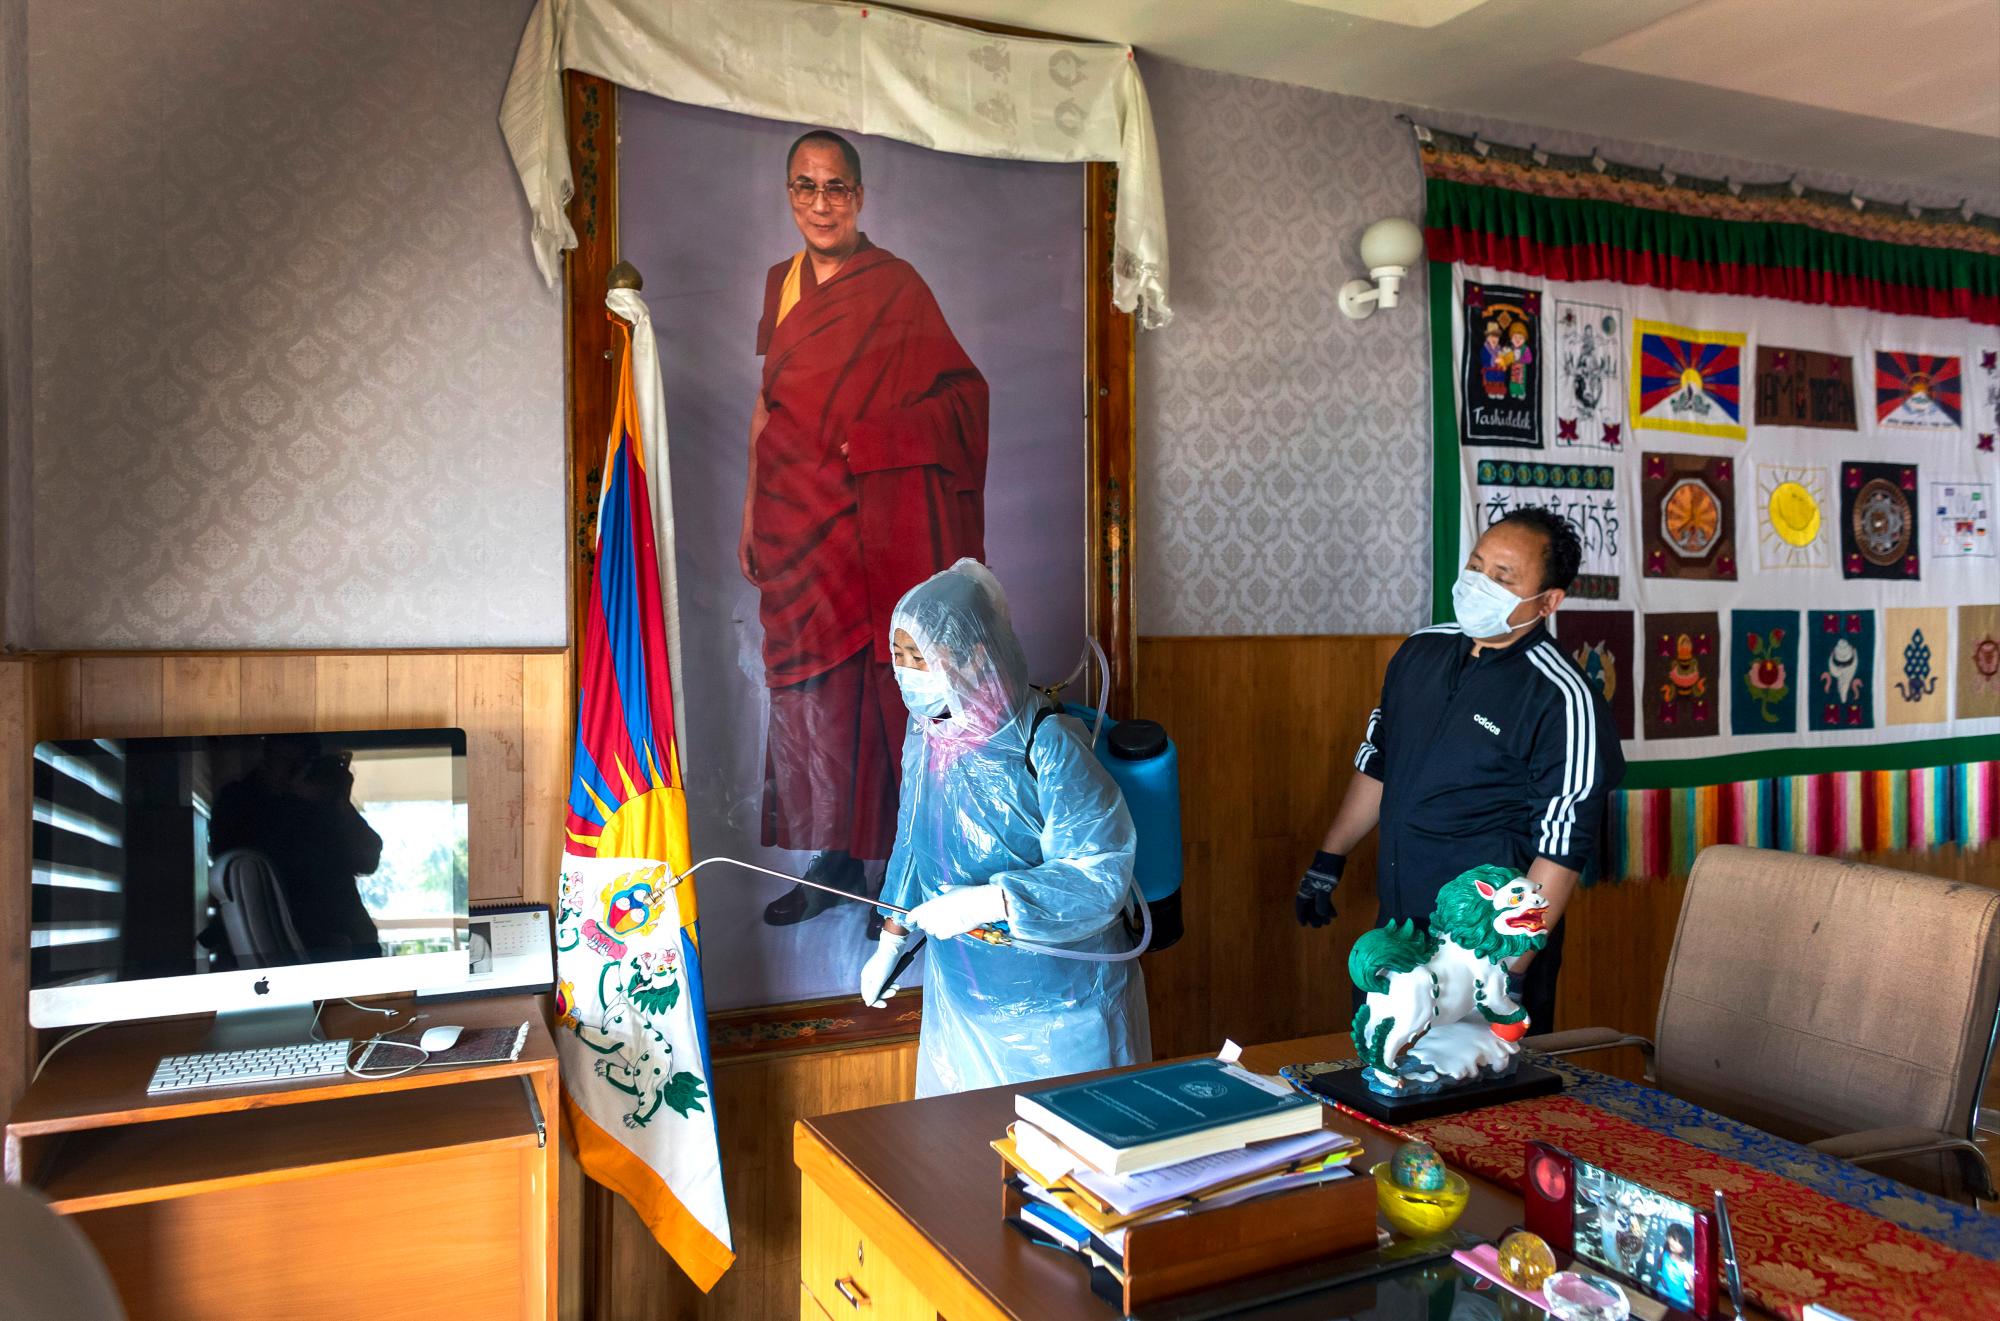 Un retrato del líder espiritual tibetano, el Dalai Lama, adorna una pared de la oficina del presidente tibetano Lobsang Sangay como empleado de la Administración Central Tibetana en ropa protectora rocía un esterilizador como precaución del coronavirus en Dharmsala, India, el jueves 19 de marzo. , 2020.